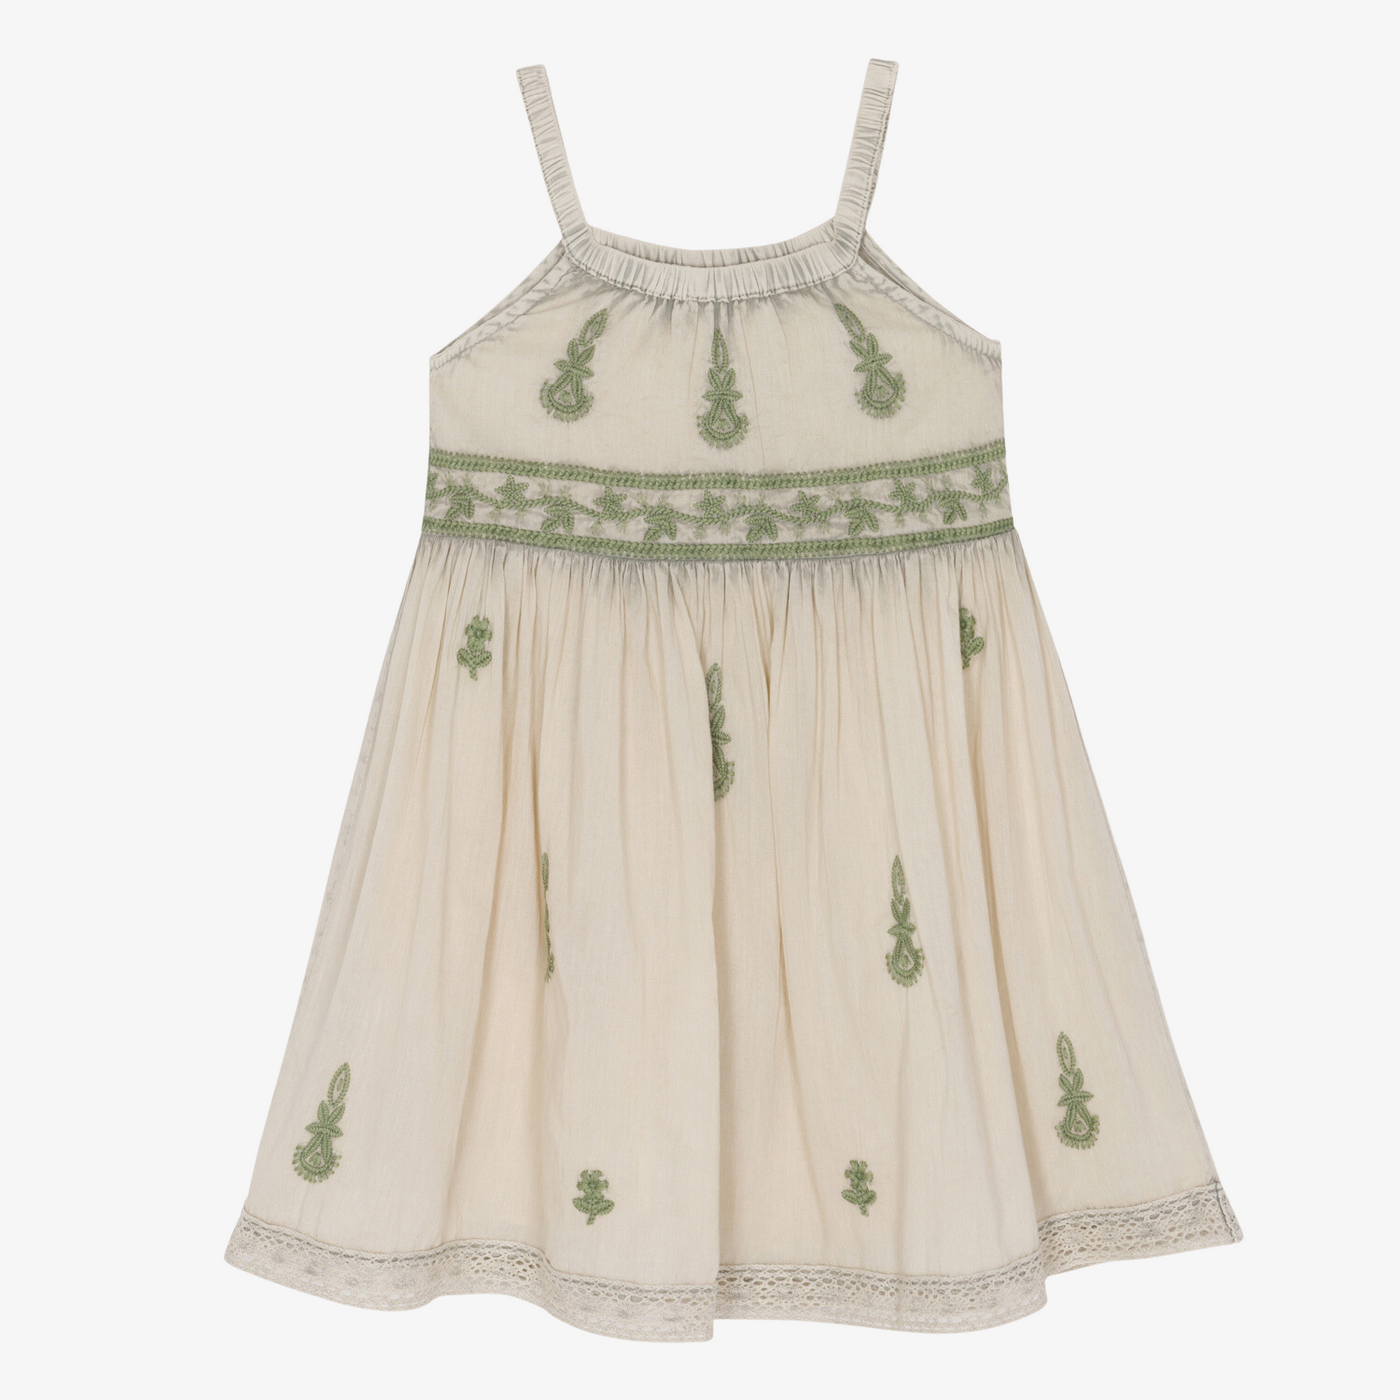 lilliana dress in cream